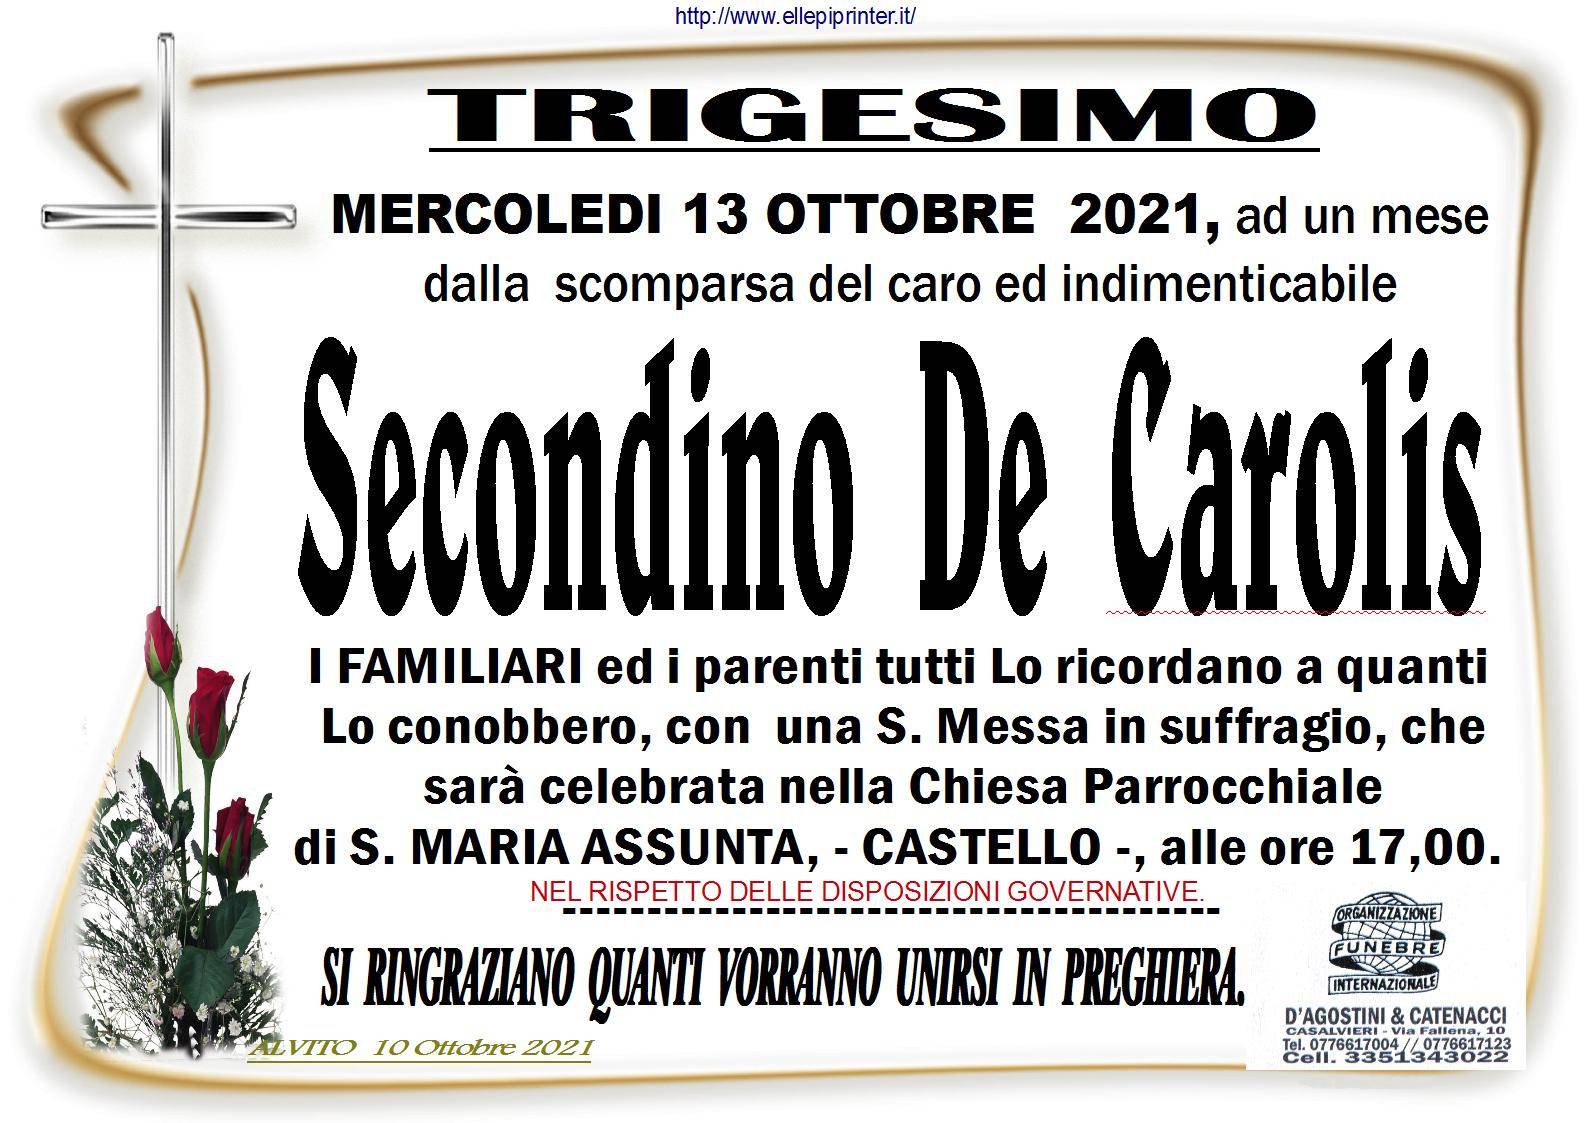 Secondino De Carolis